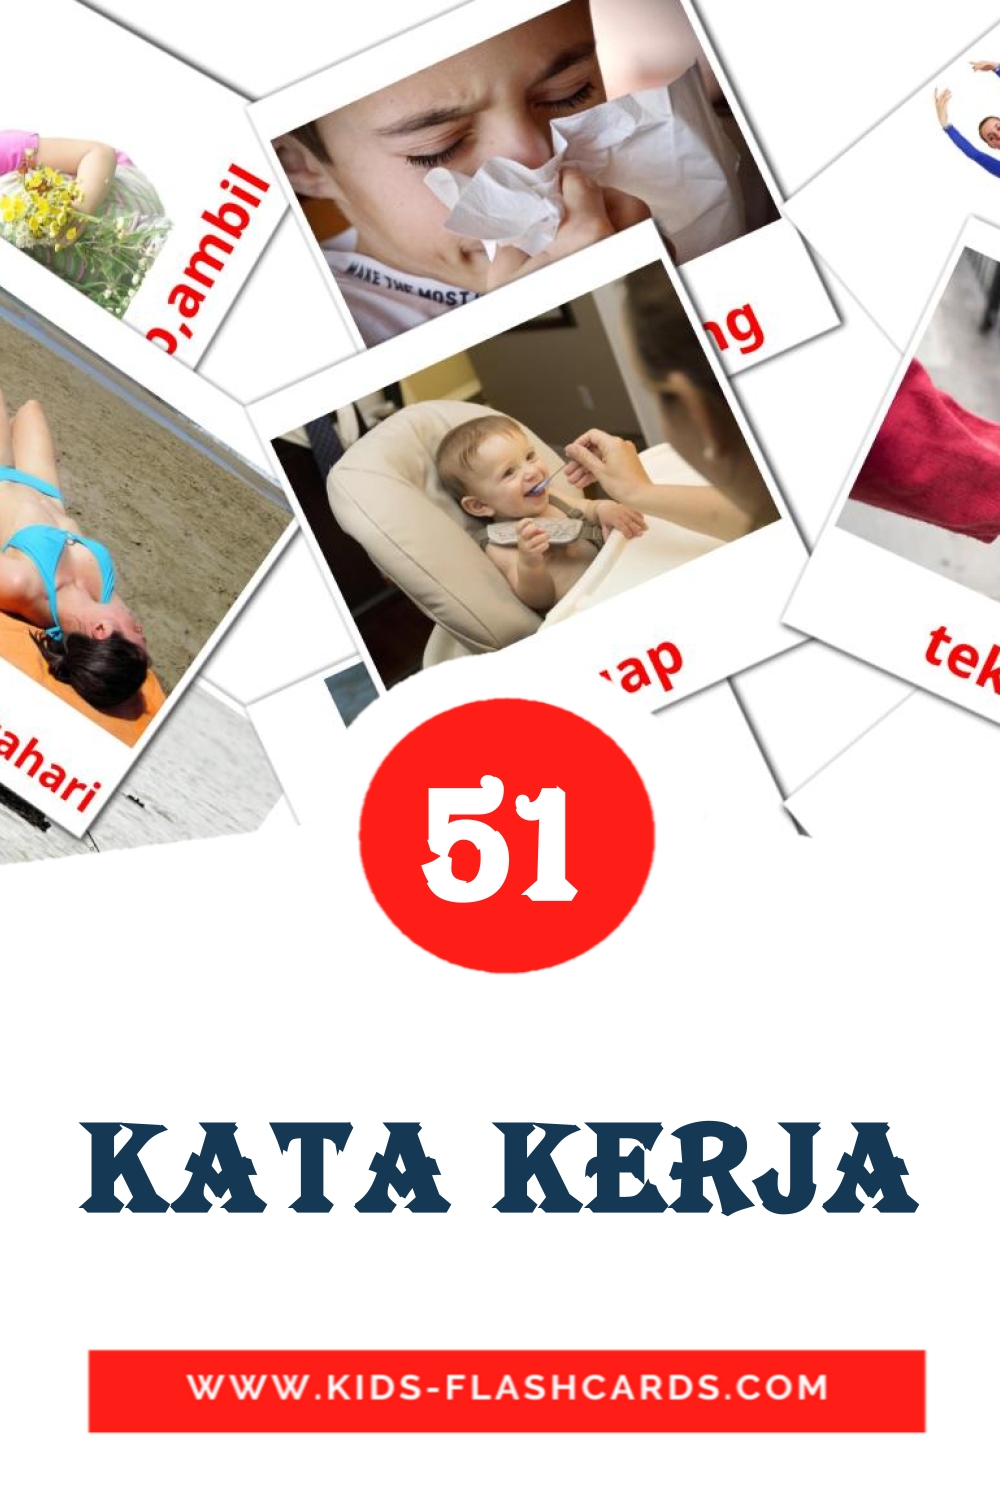 51 tarjetas didacticas de Kata kerja para el jardín de infancia en malayo